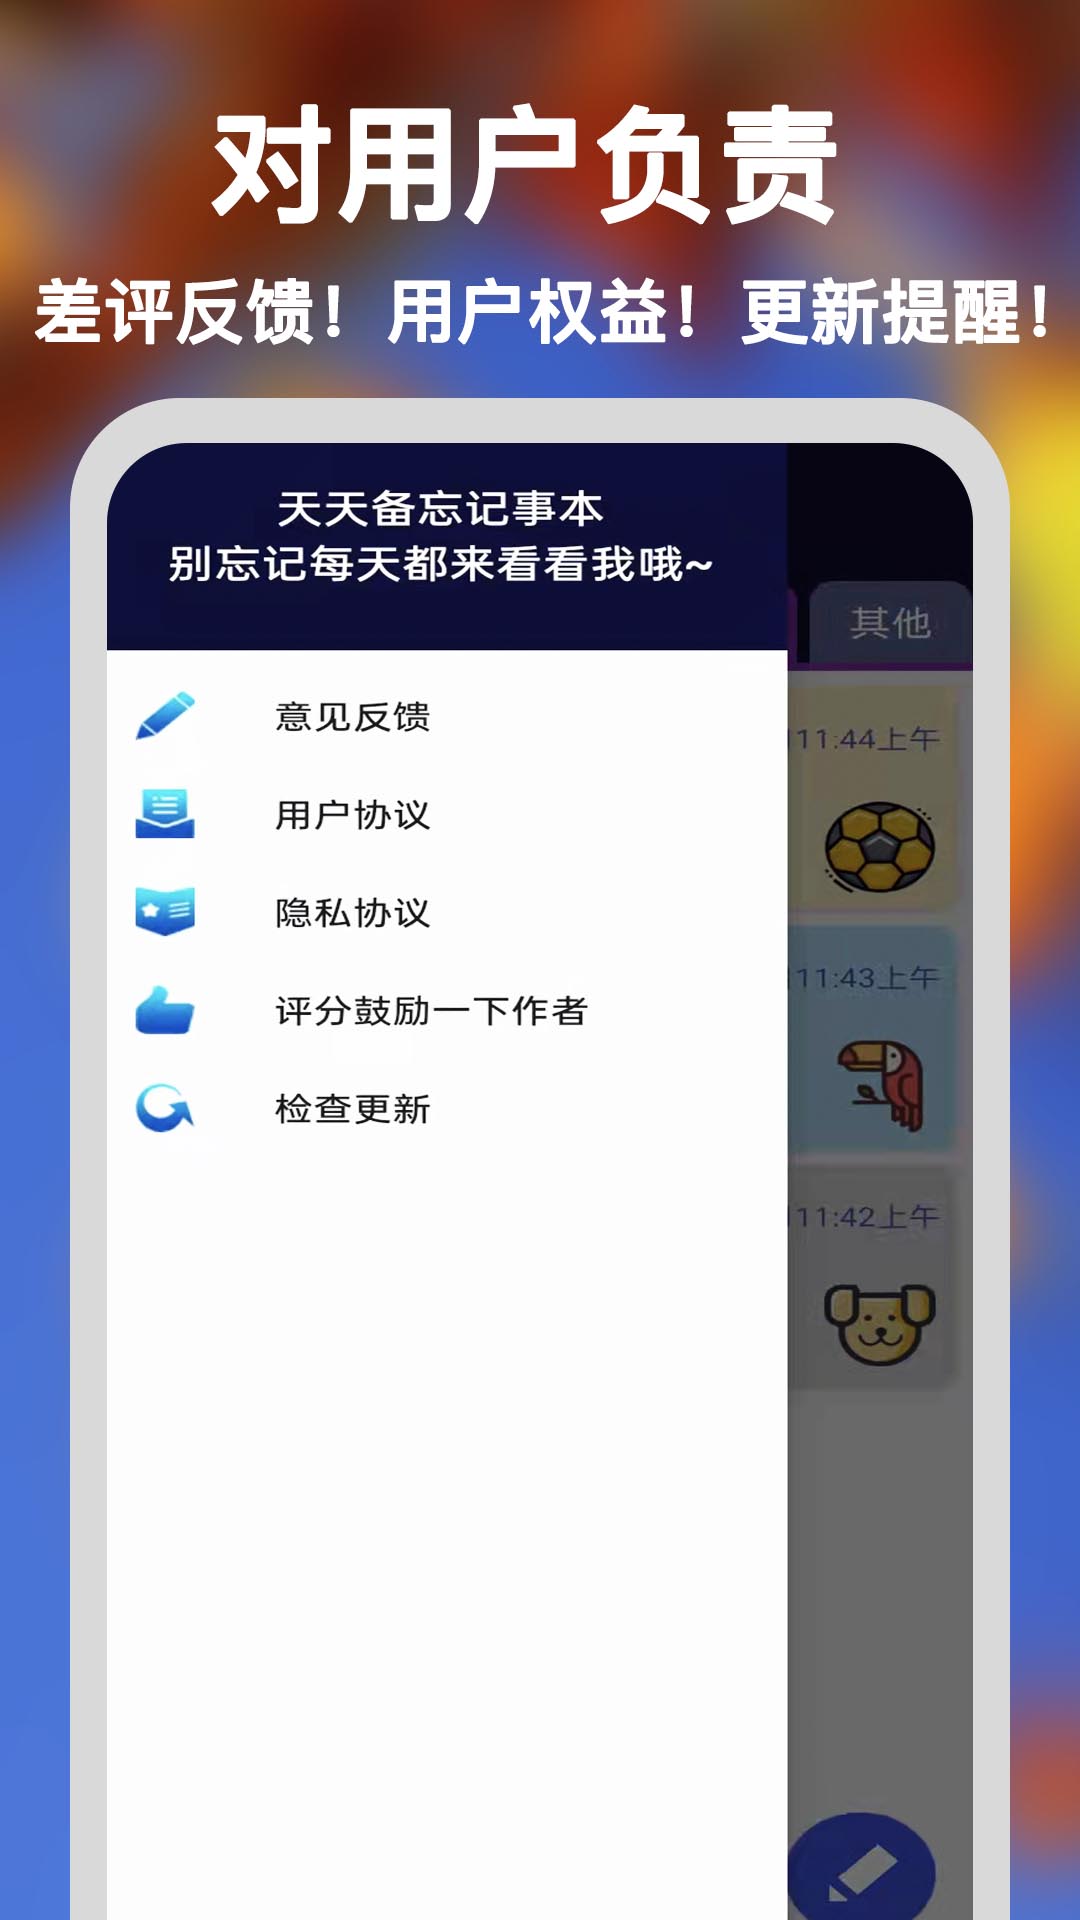 天天备忘记事本安卓版最新app下载